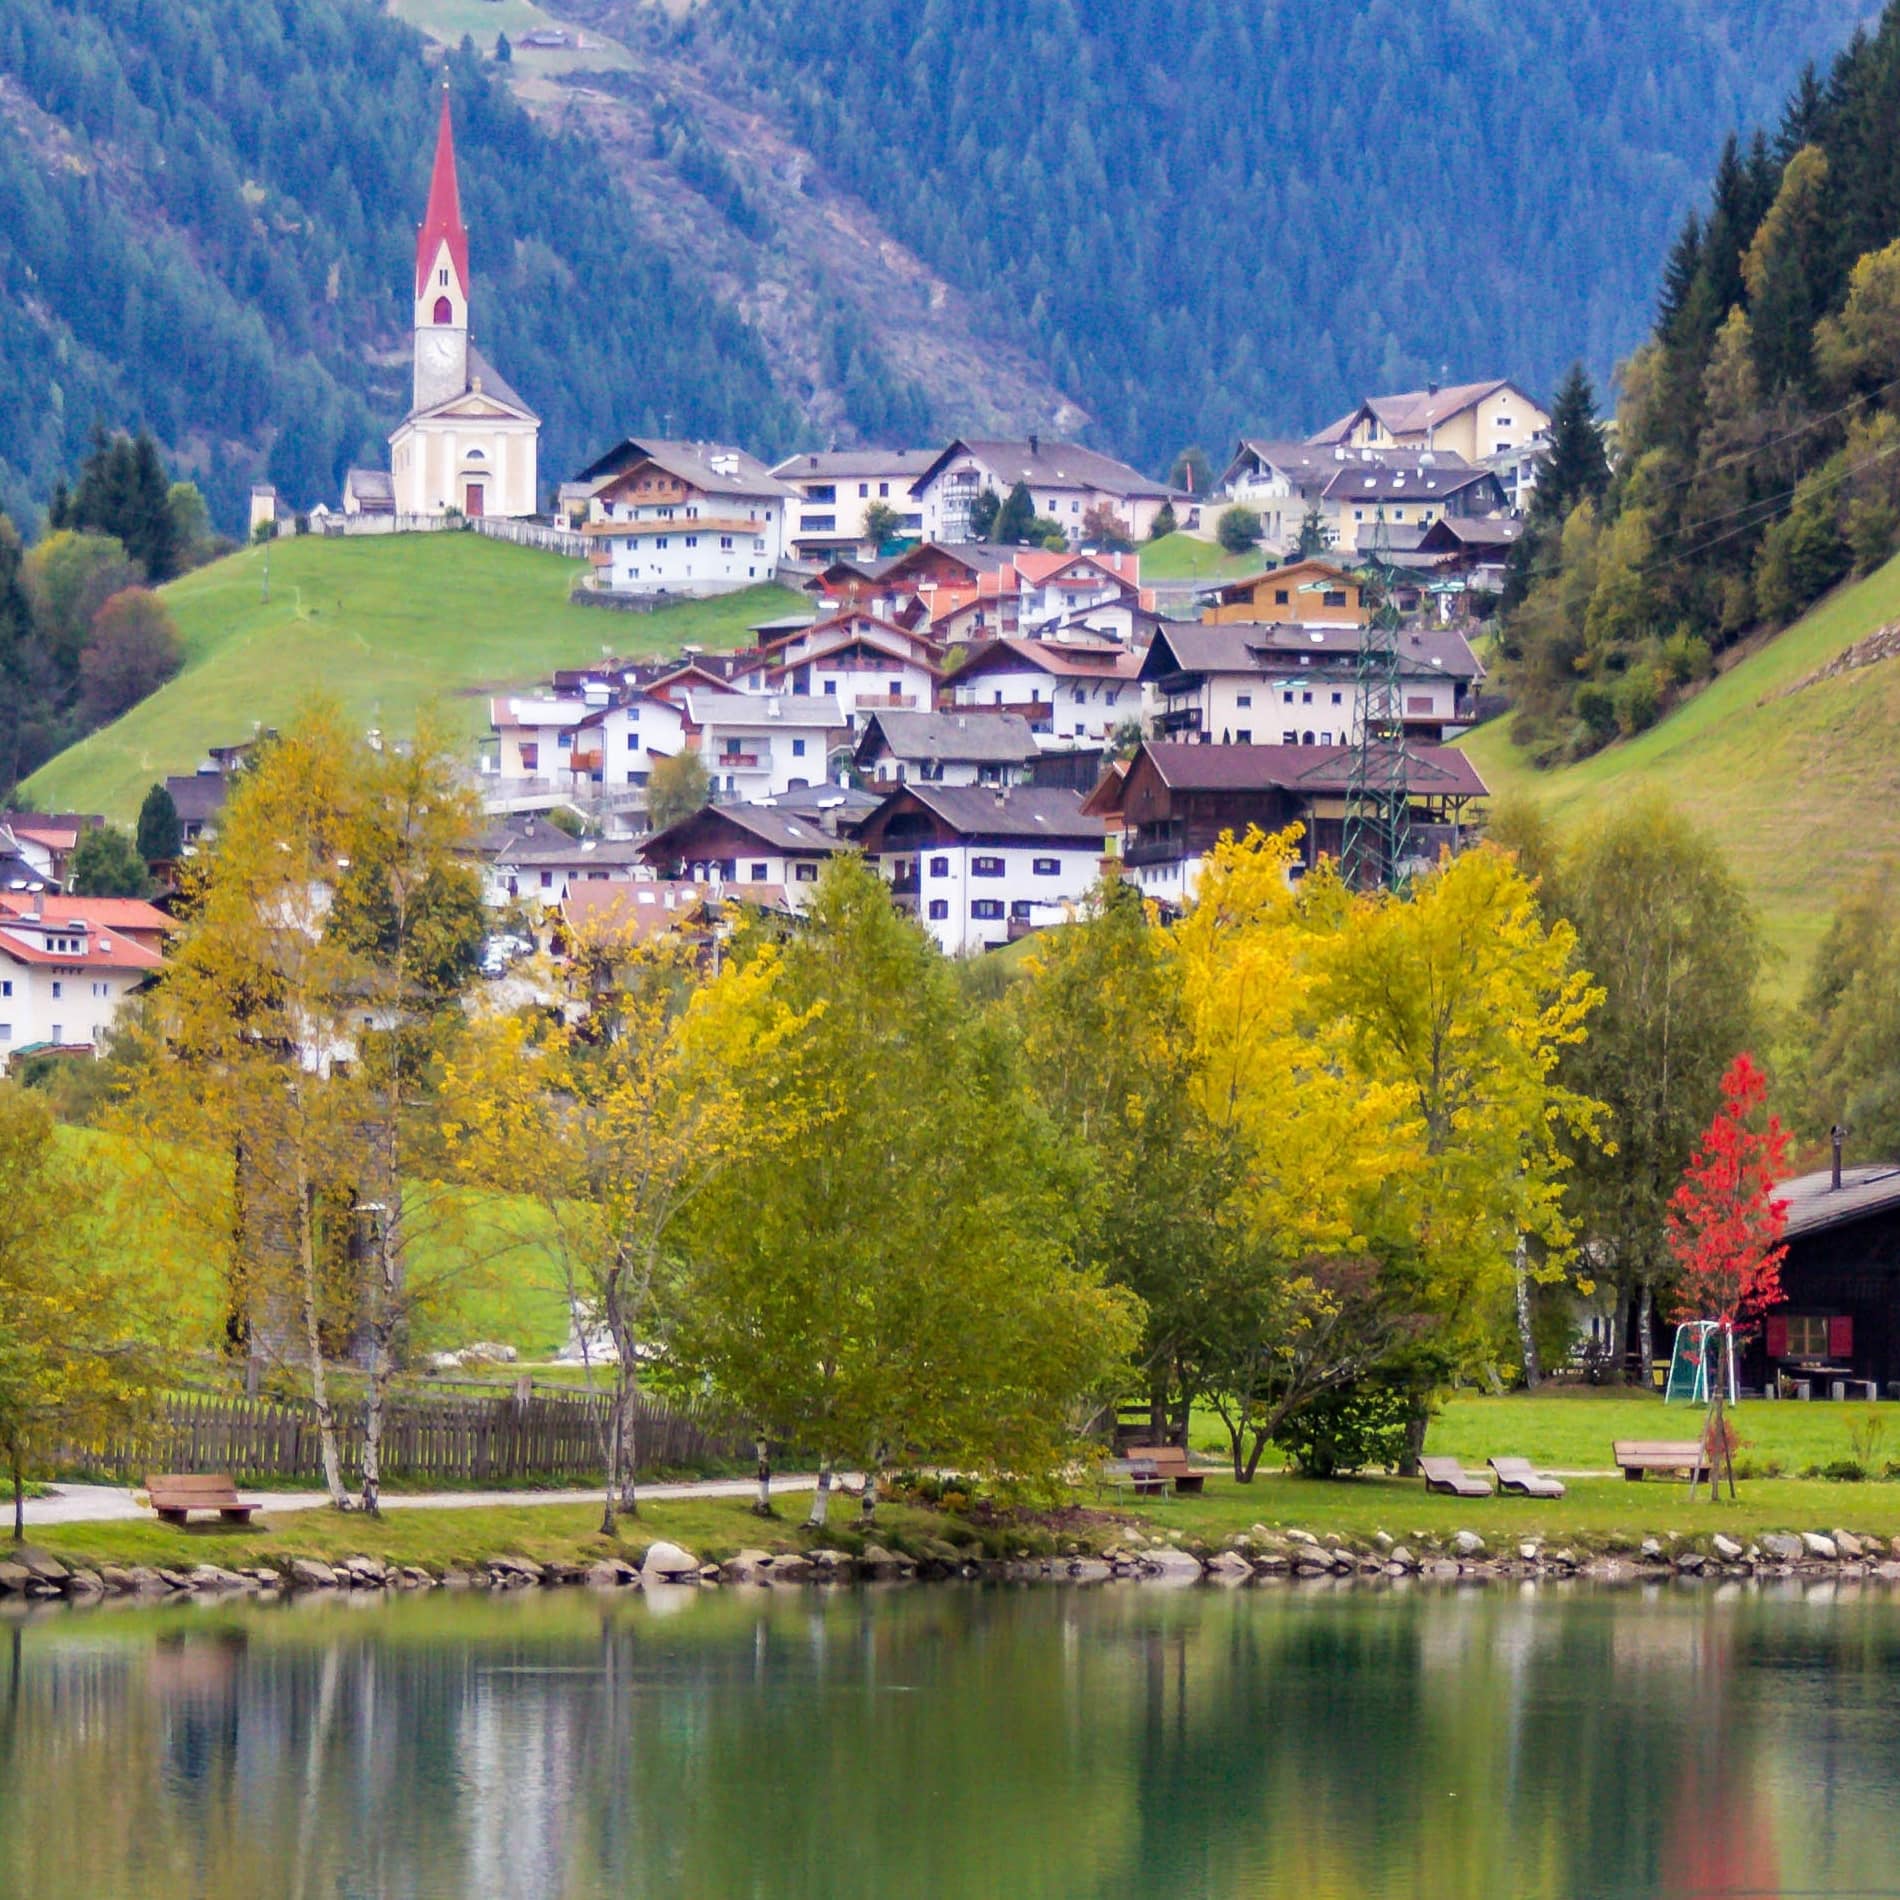 Südtiroler Dorf in den Dolomiten an einem See mit Gebäuden, die teilweise als Ferienhäuser gemietet werden können